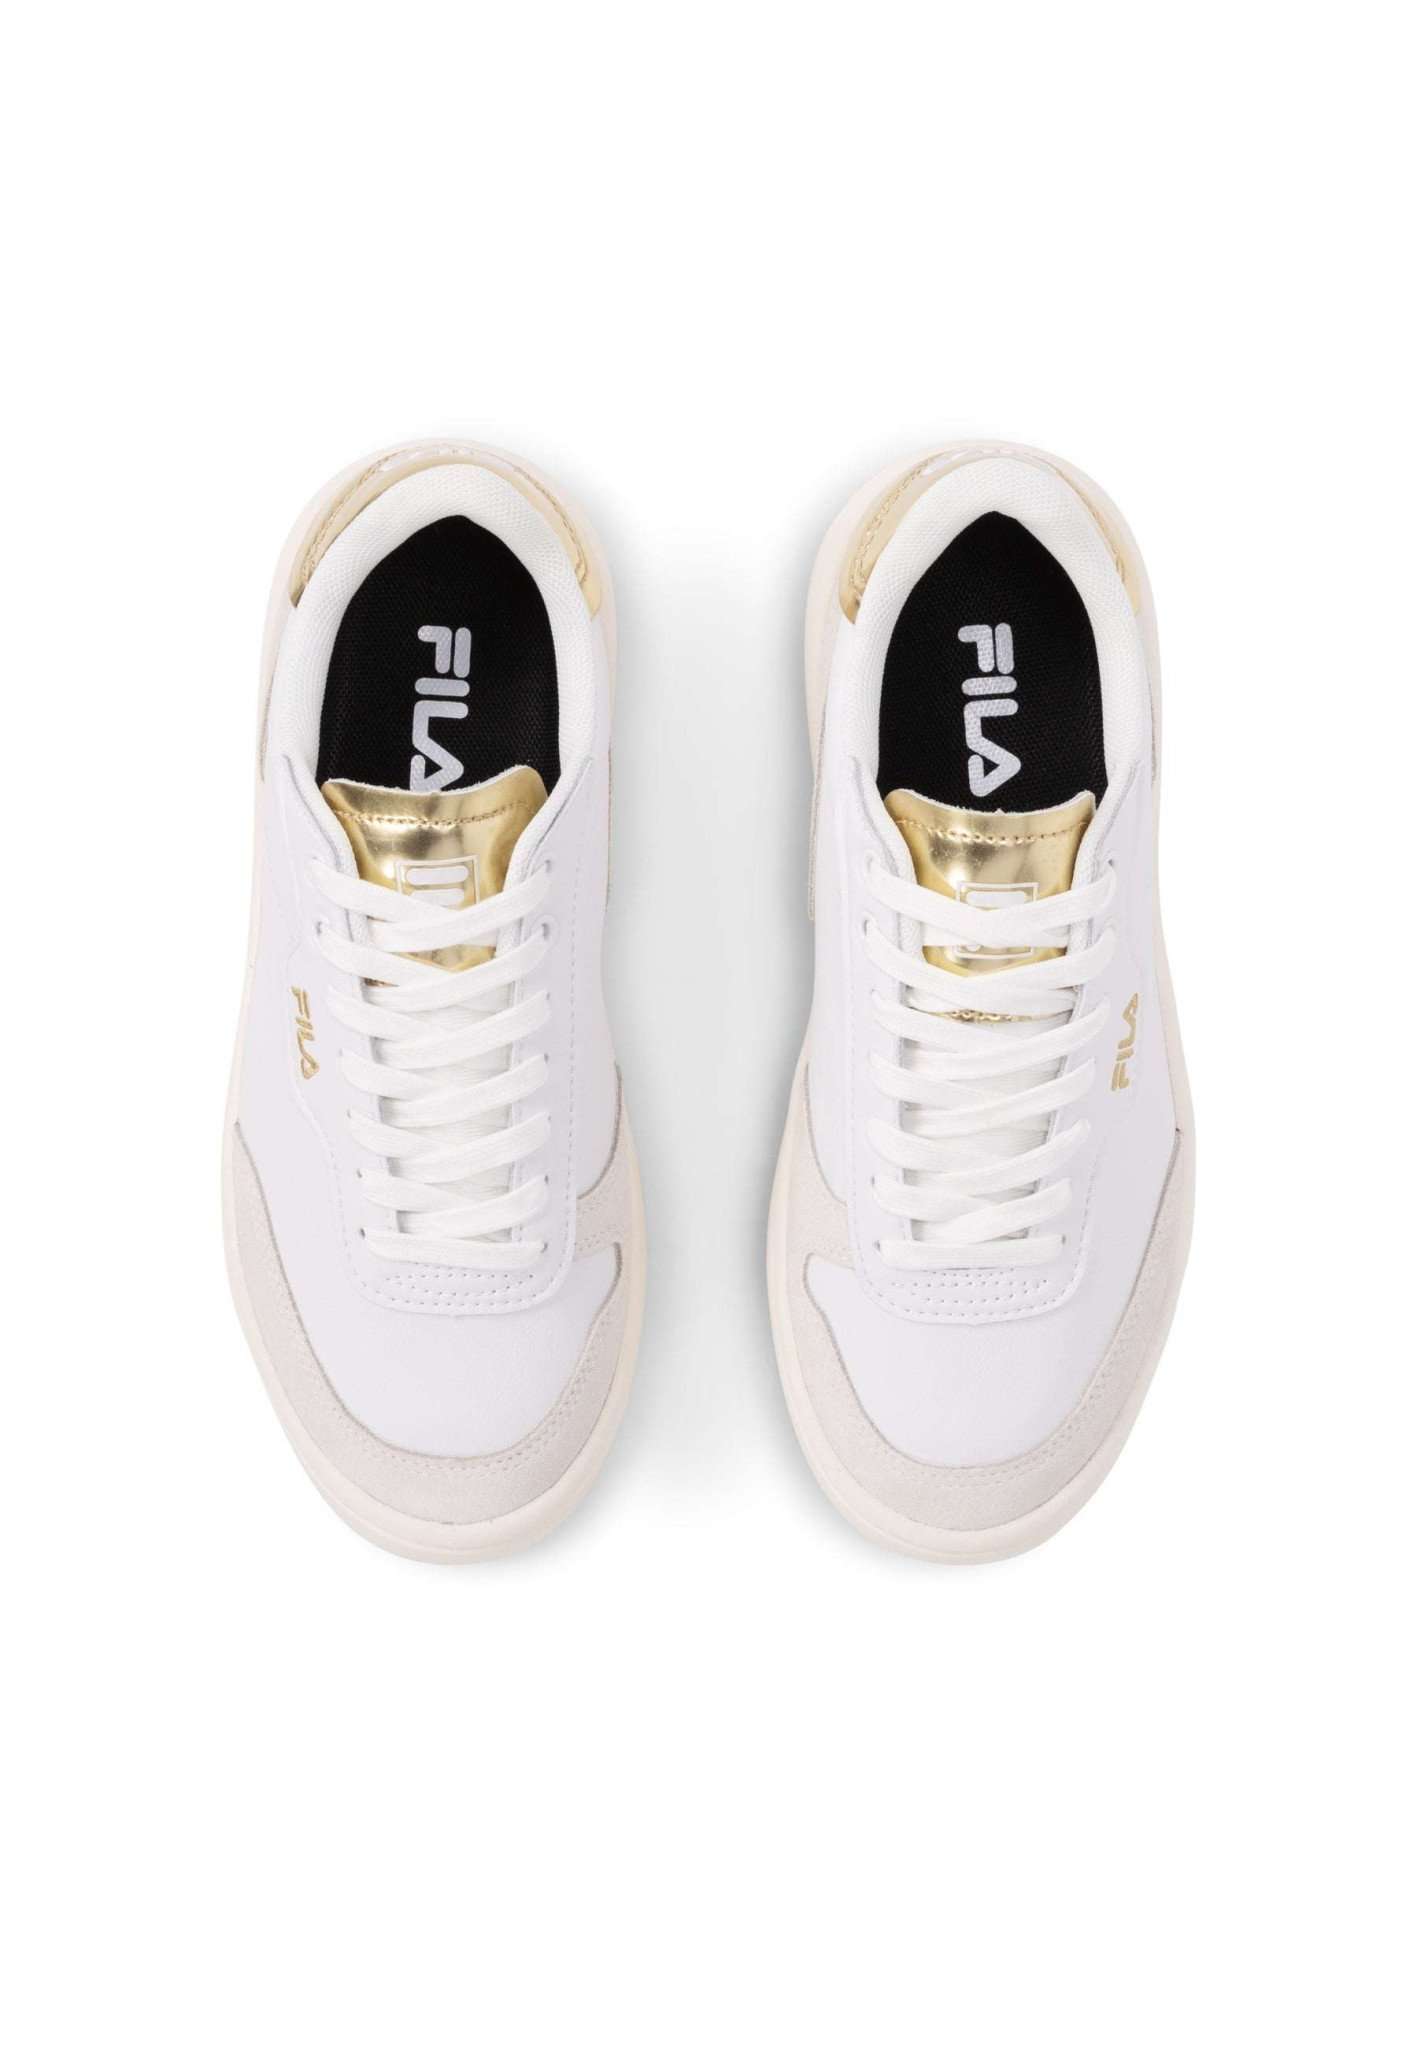 Fila Premium F Wmn in White-Gold Sneakers Fila   